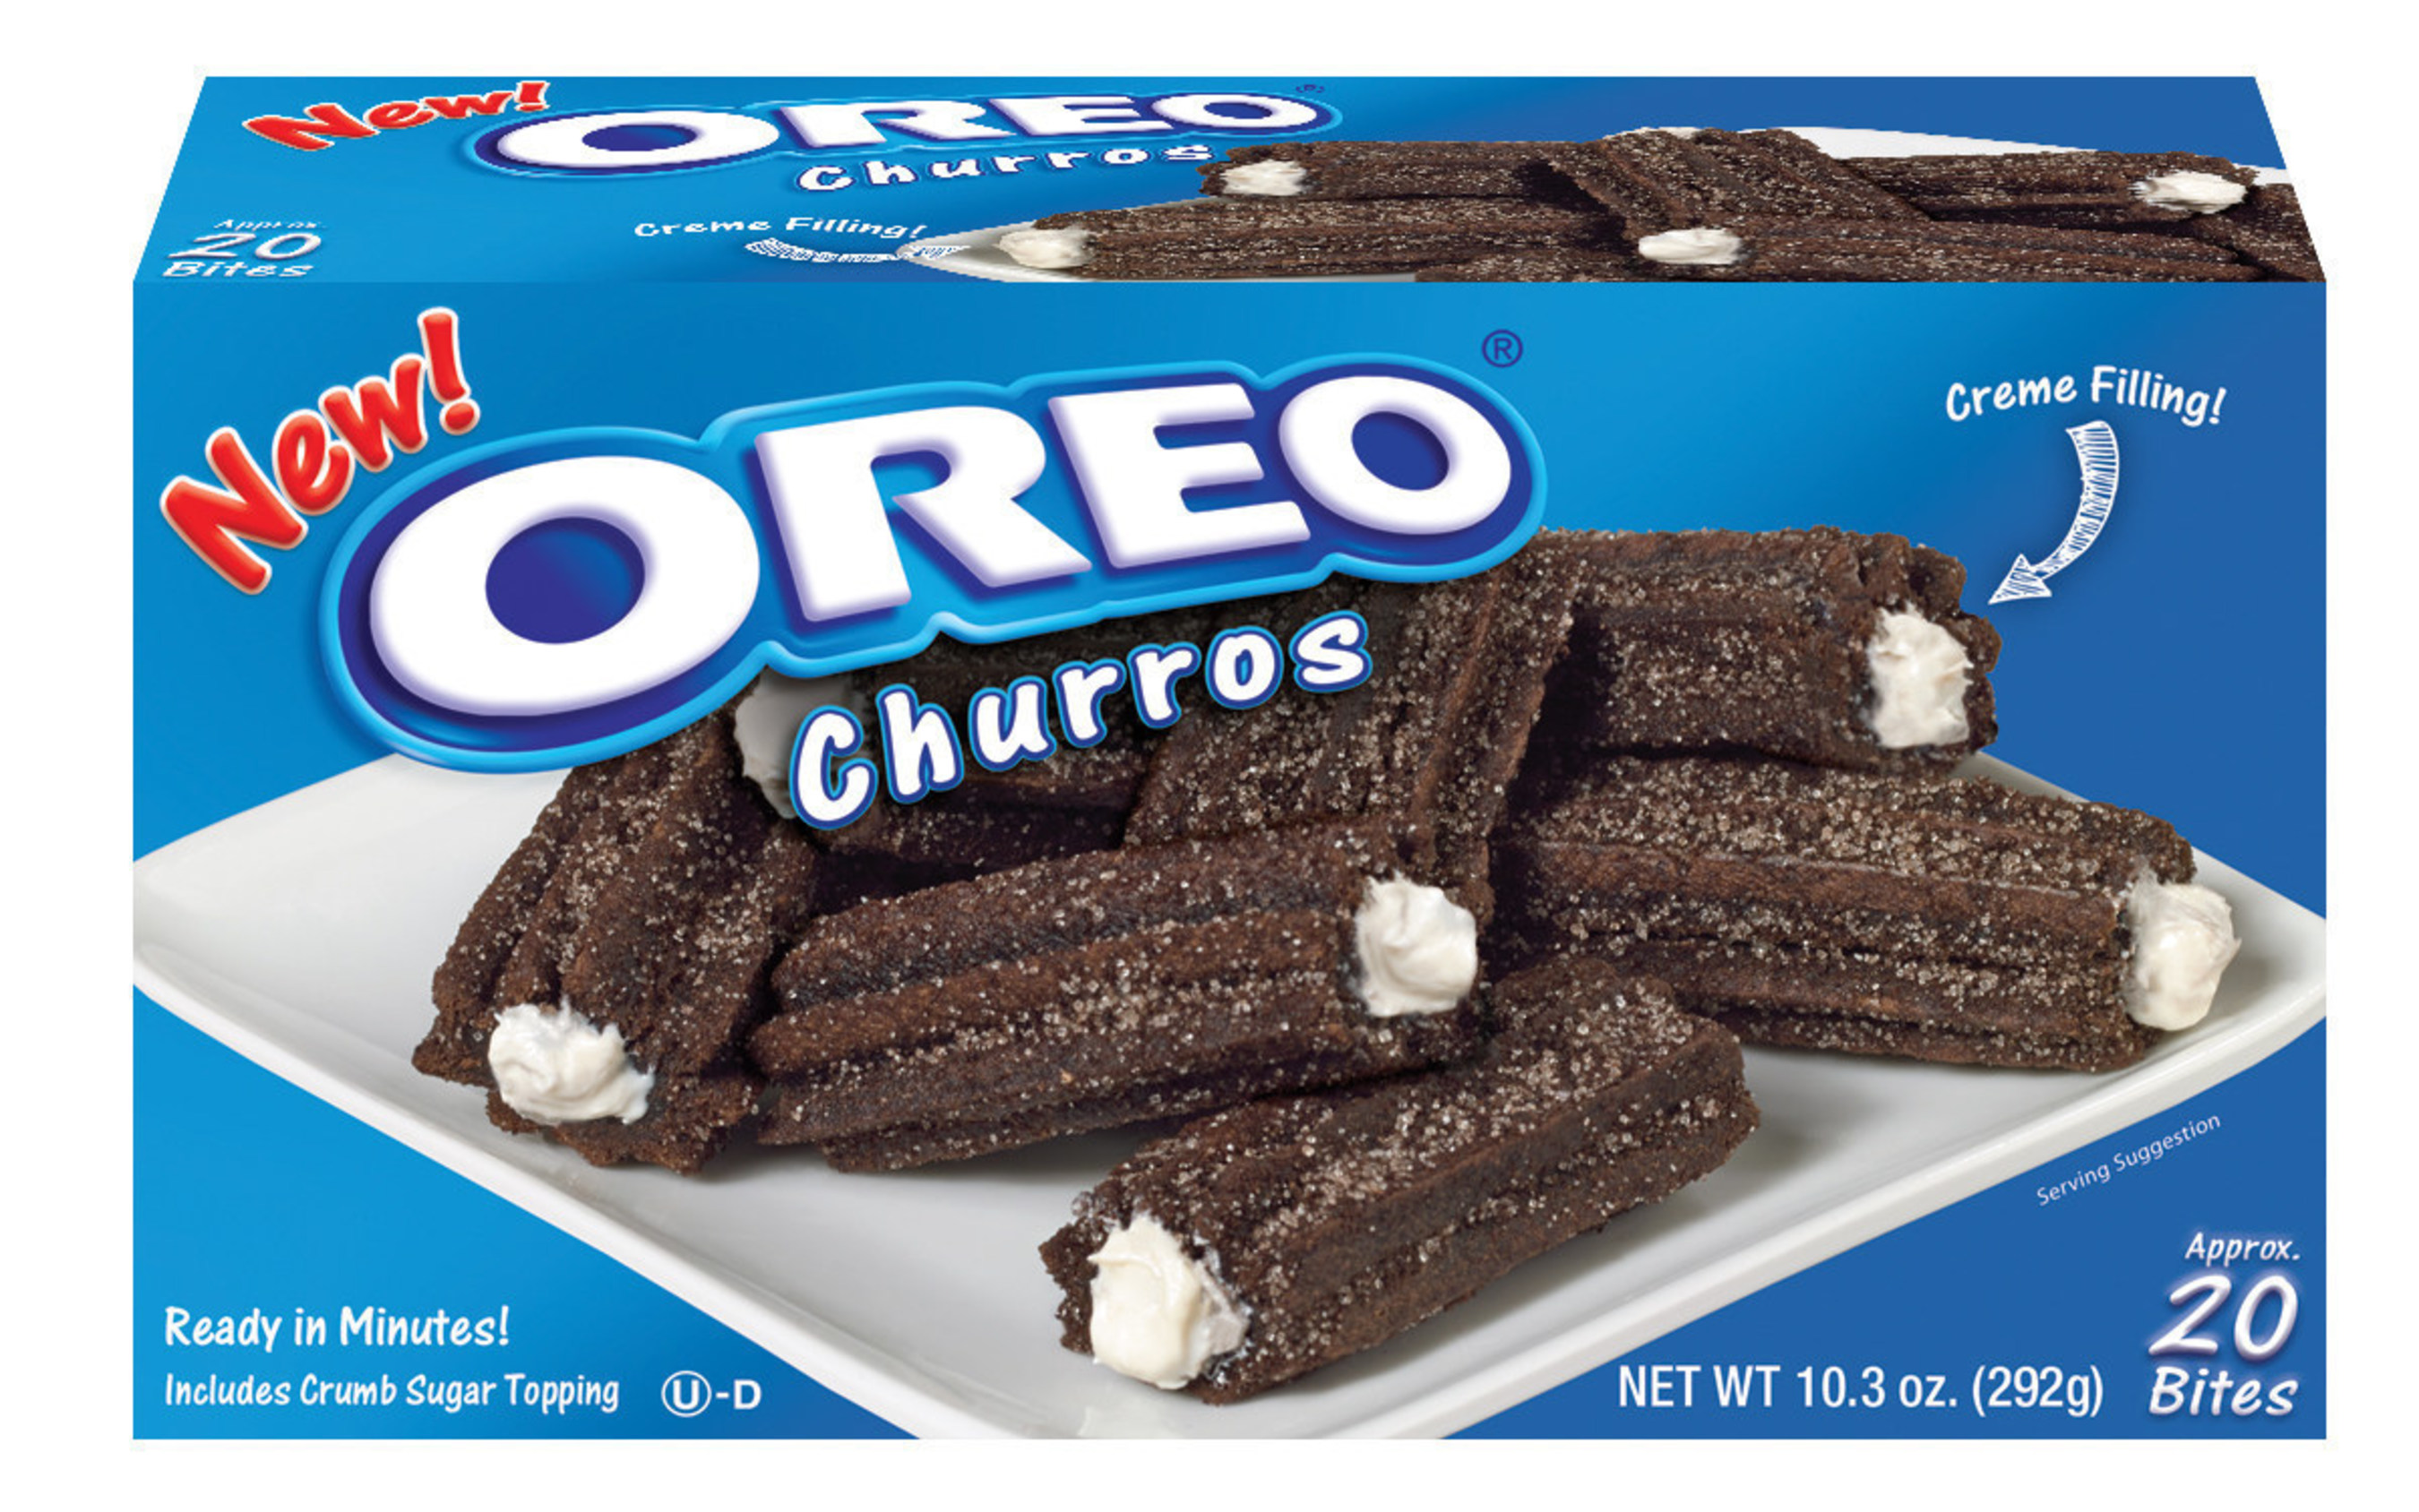 OREO Creme-filled Churro Bites for retail.